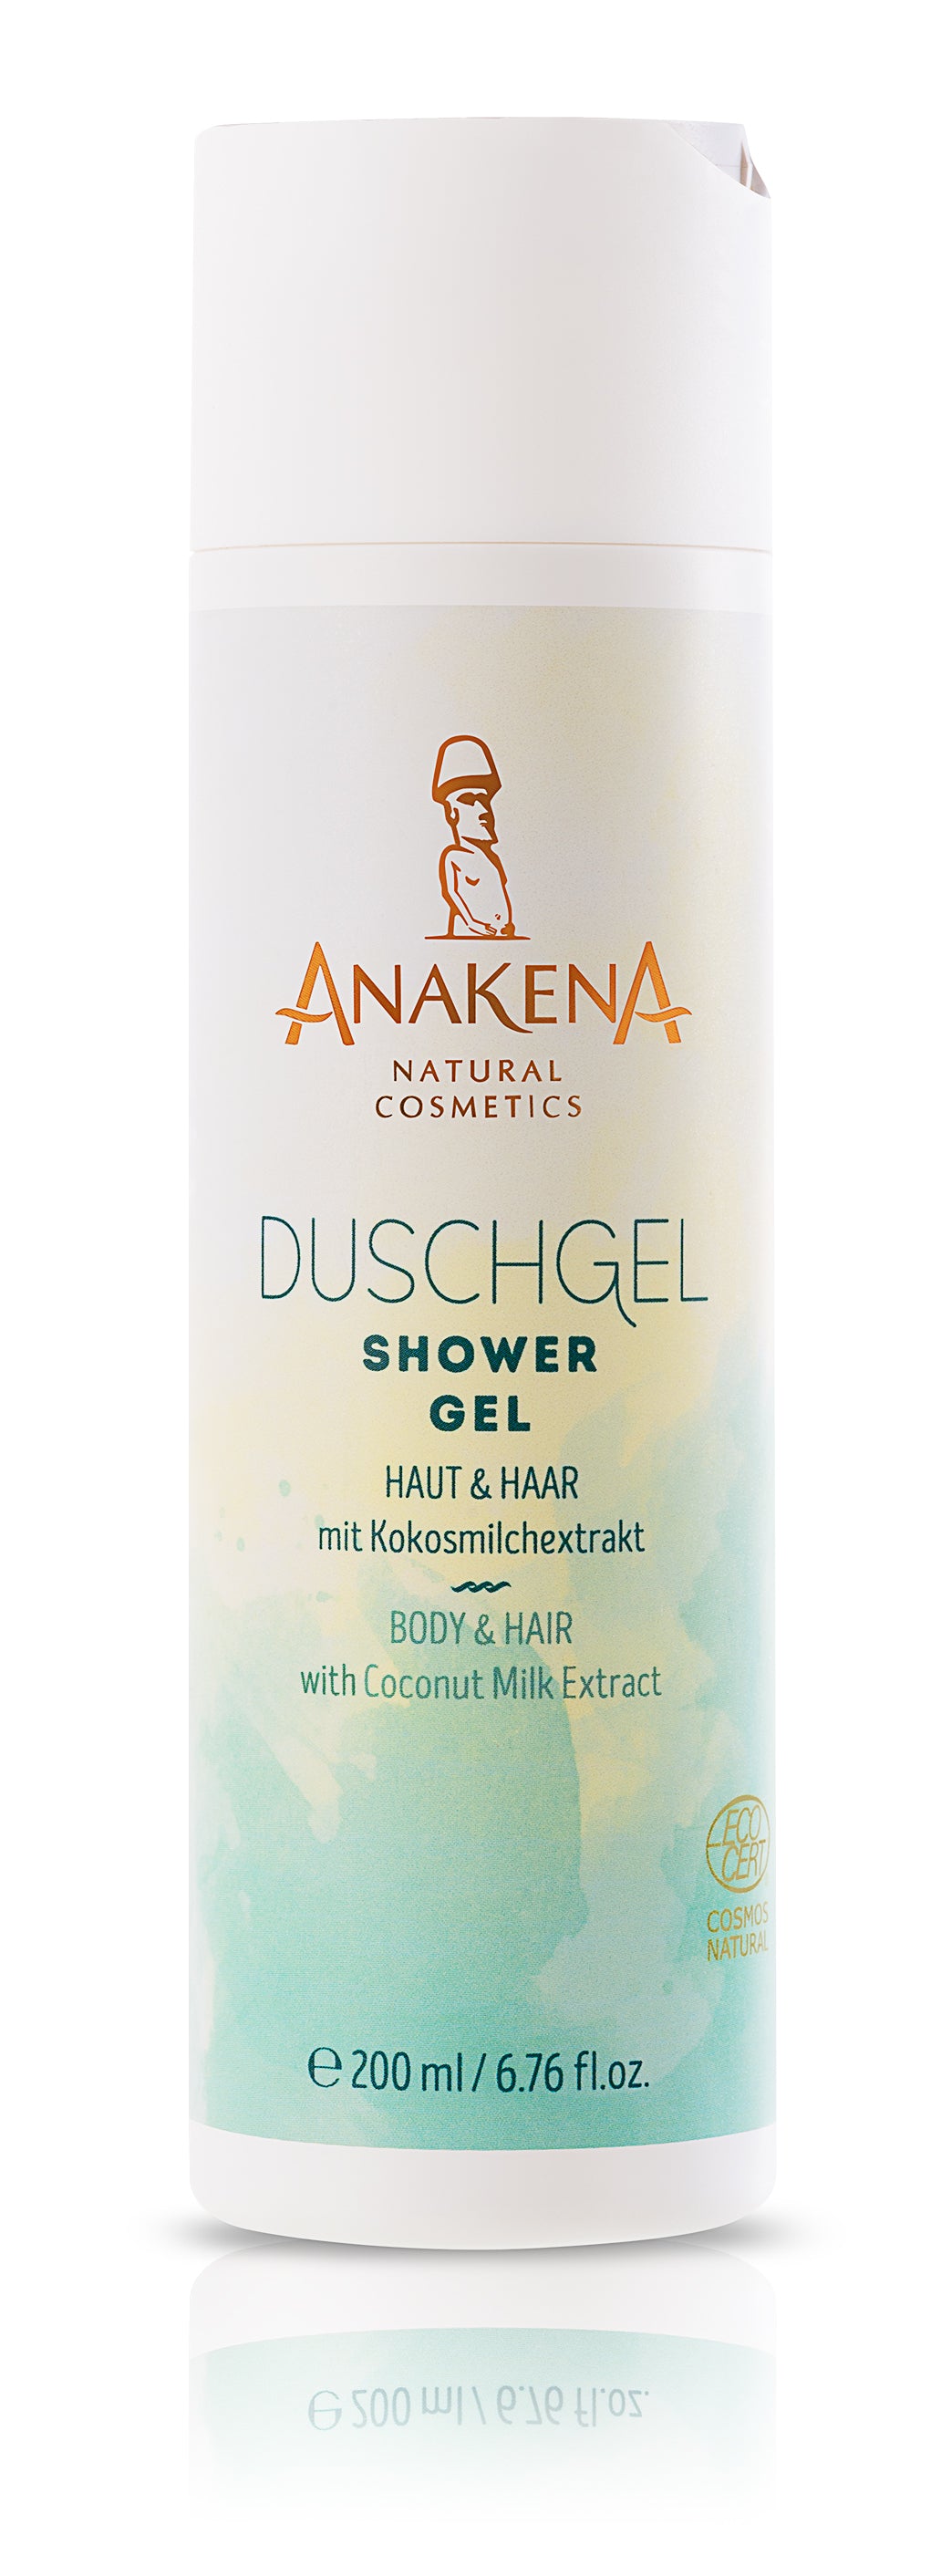 Anakena Duschgel Haut & Haar mit mit Kokosmilch-Extrakt